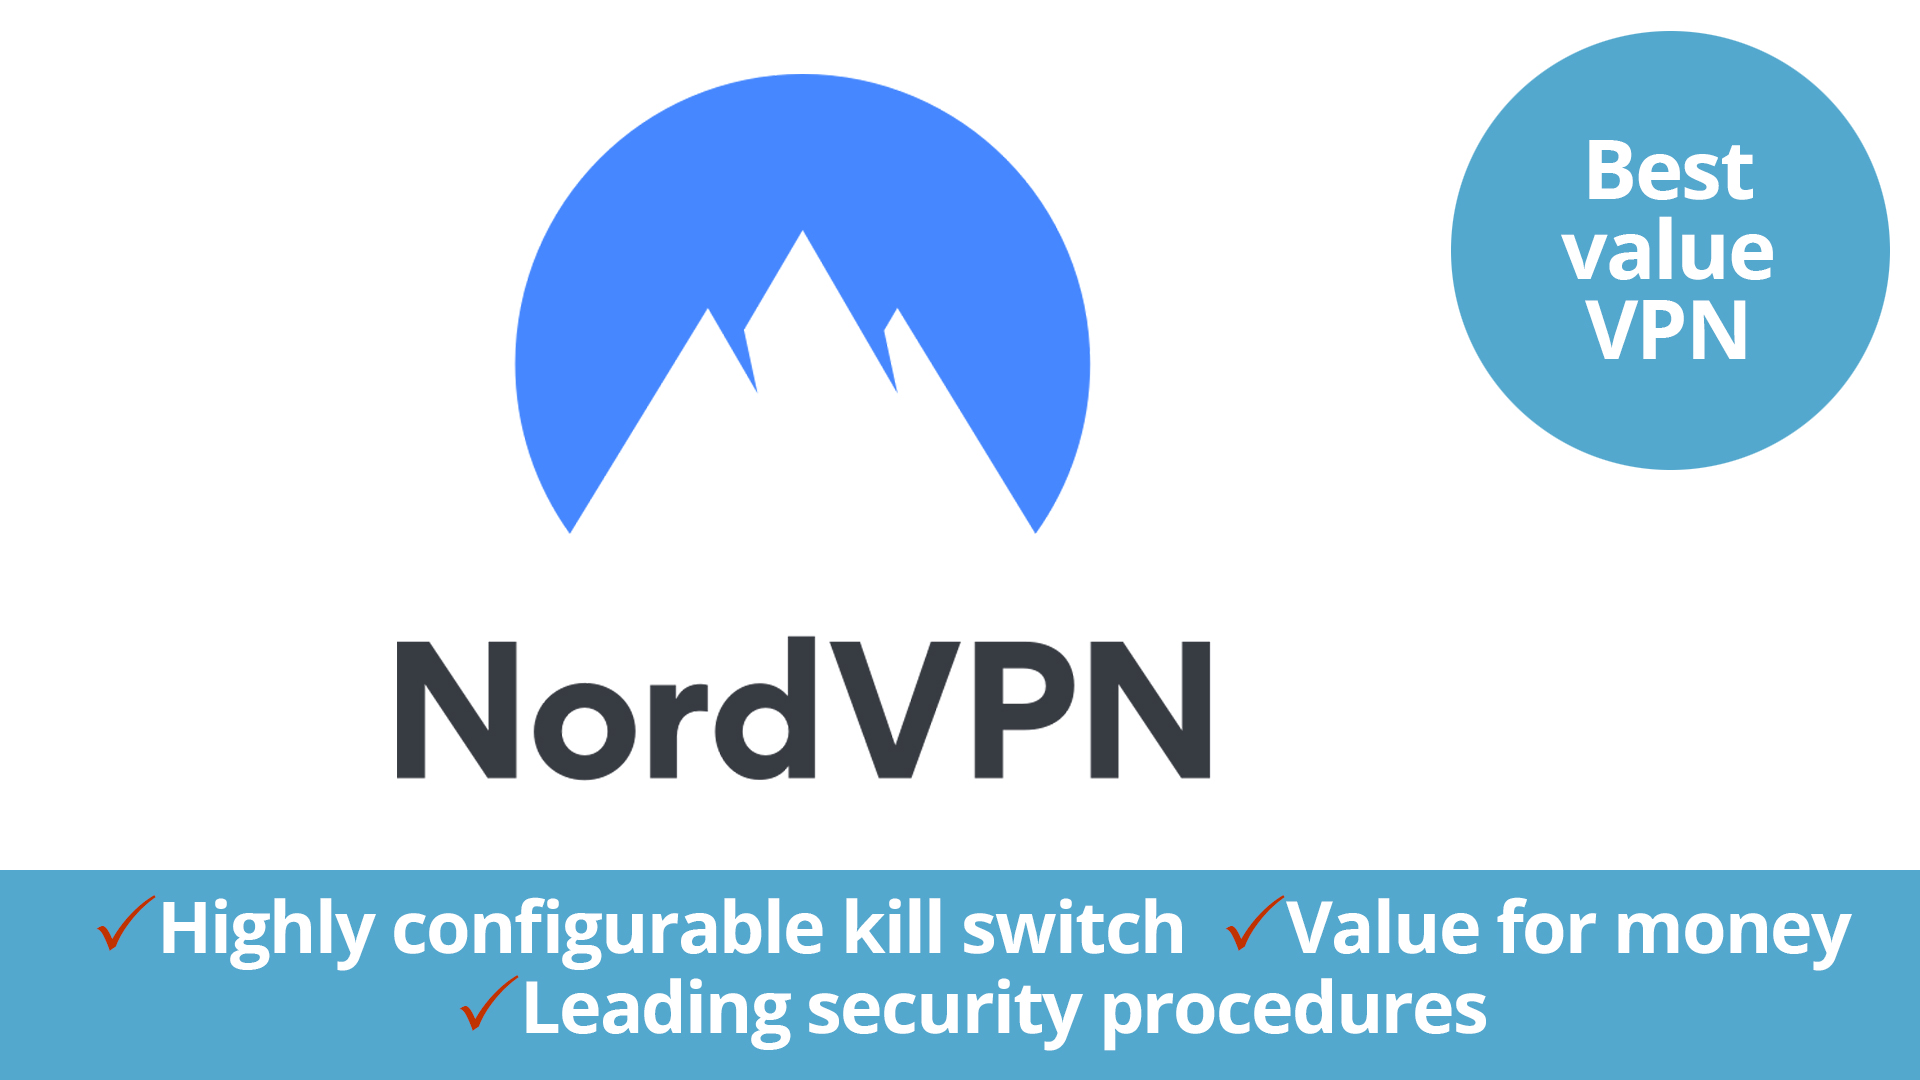 nordvpn logo for best vpn